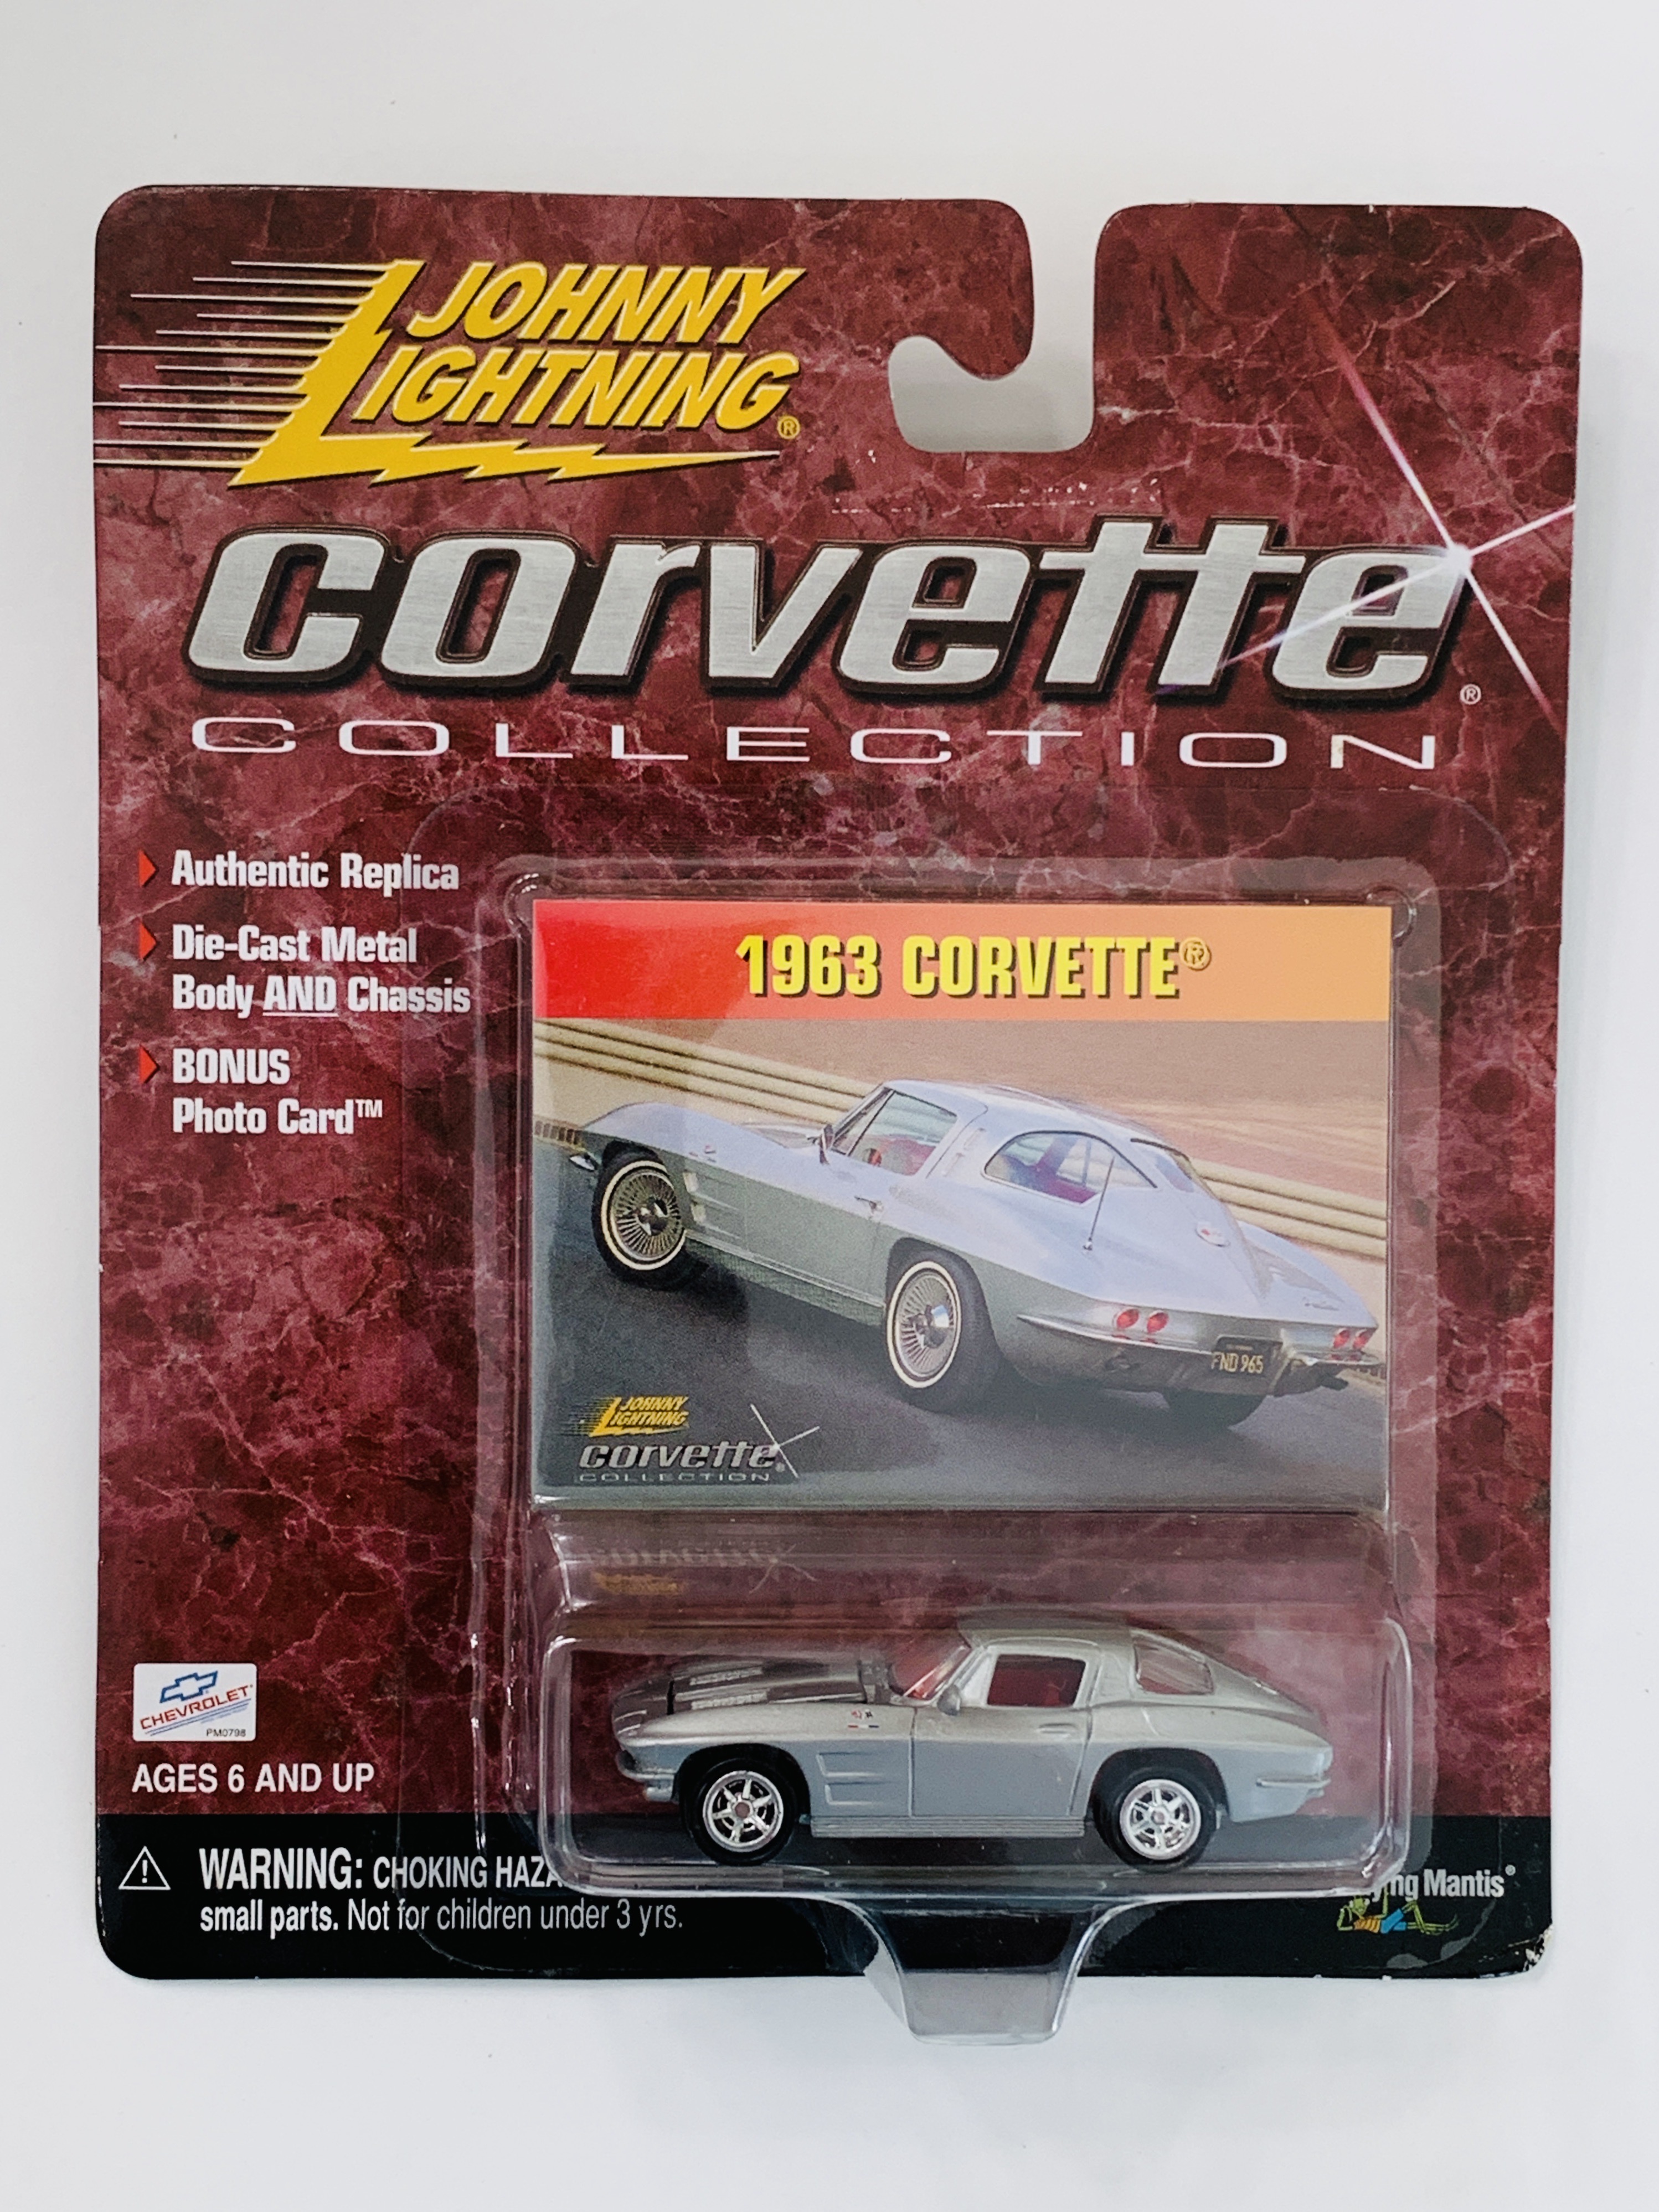 Johnny Lightning Corvette Collection 1963 Corvette